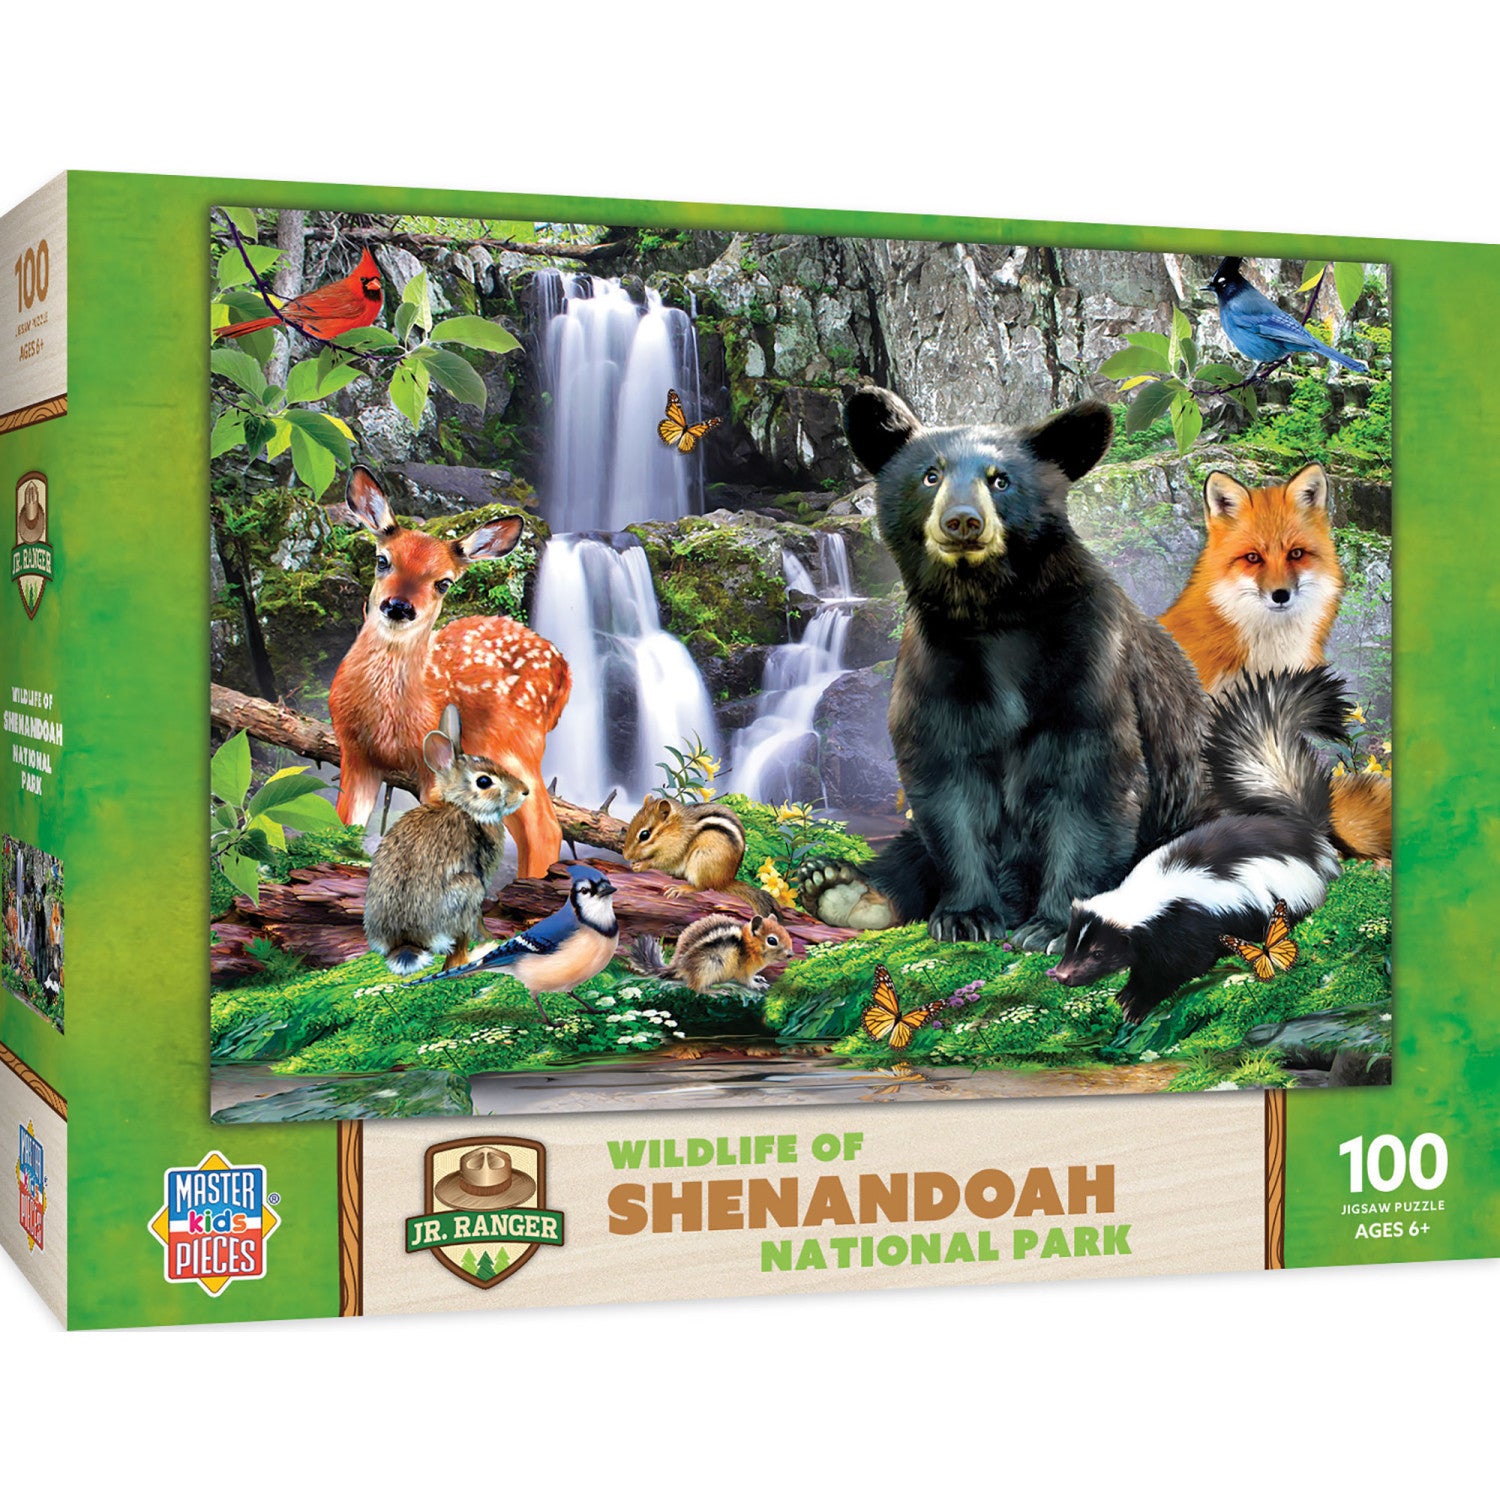 Wildlife of Shenandoah National Park - 100 Piece Jigsaw Puzzle